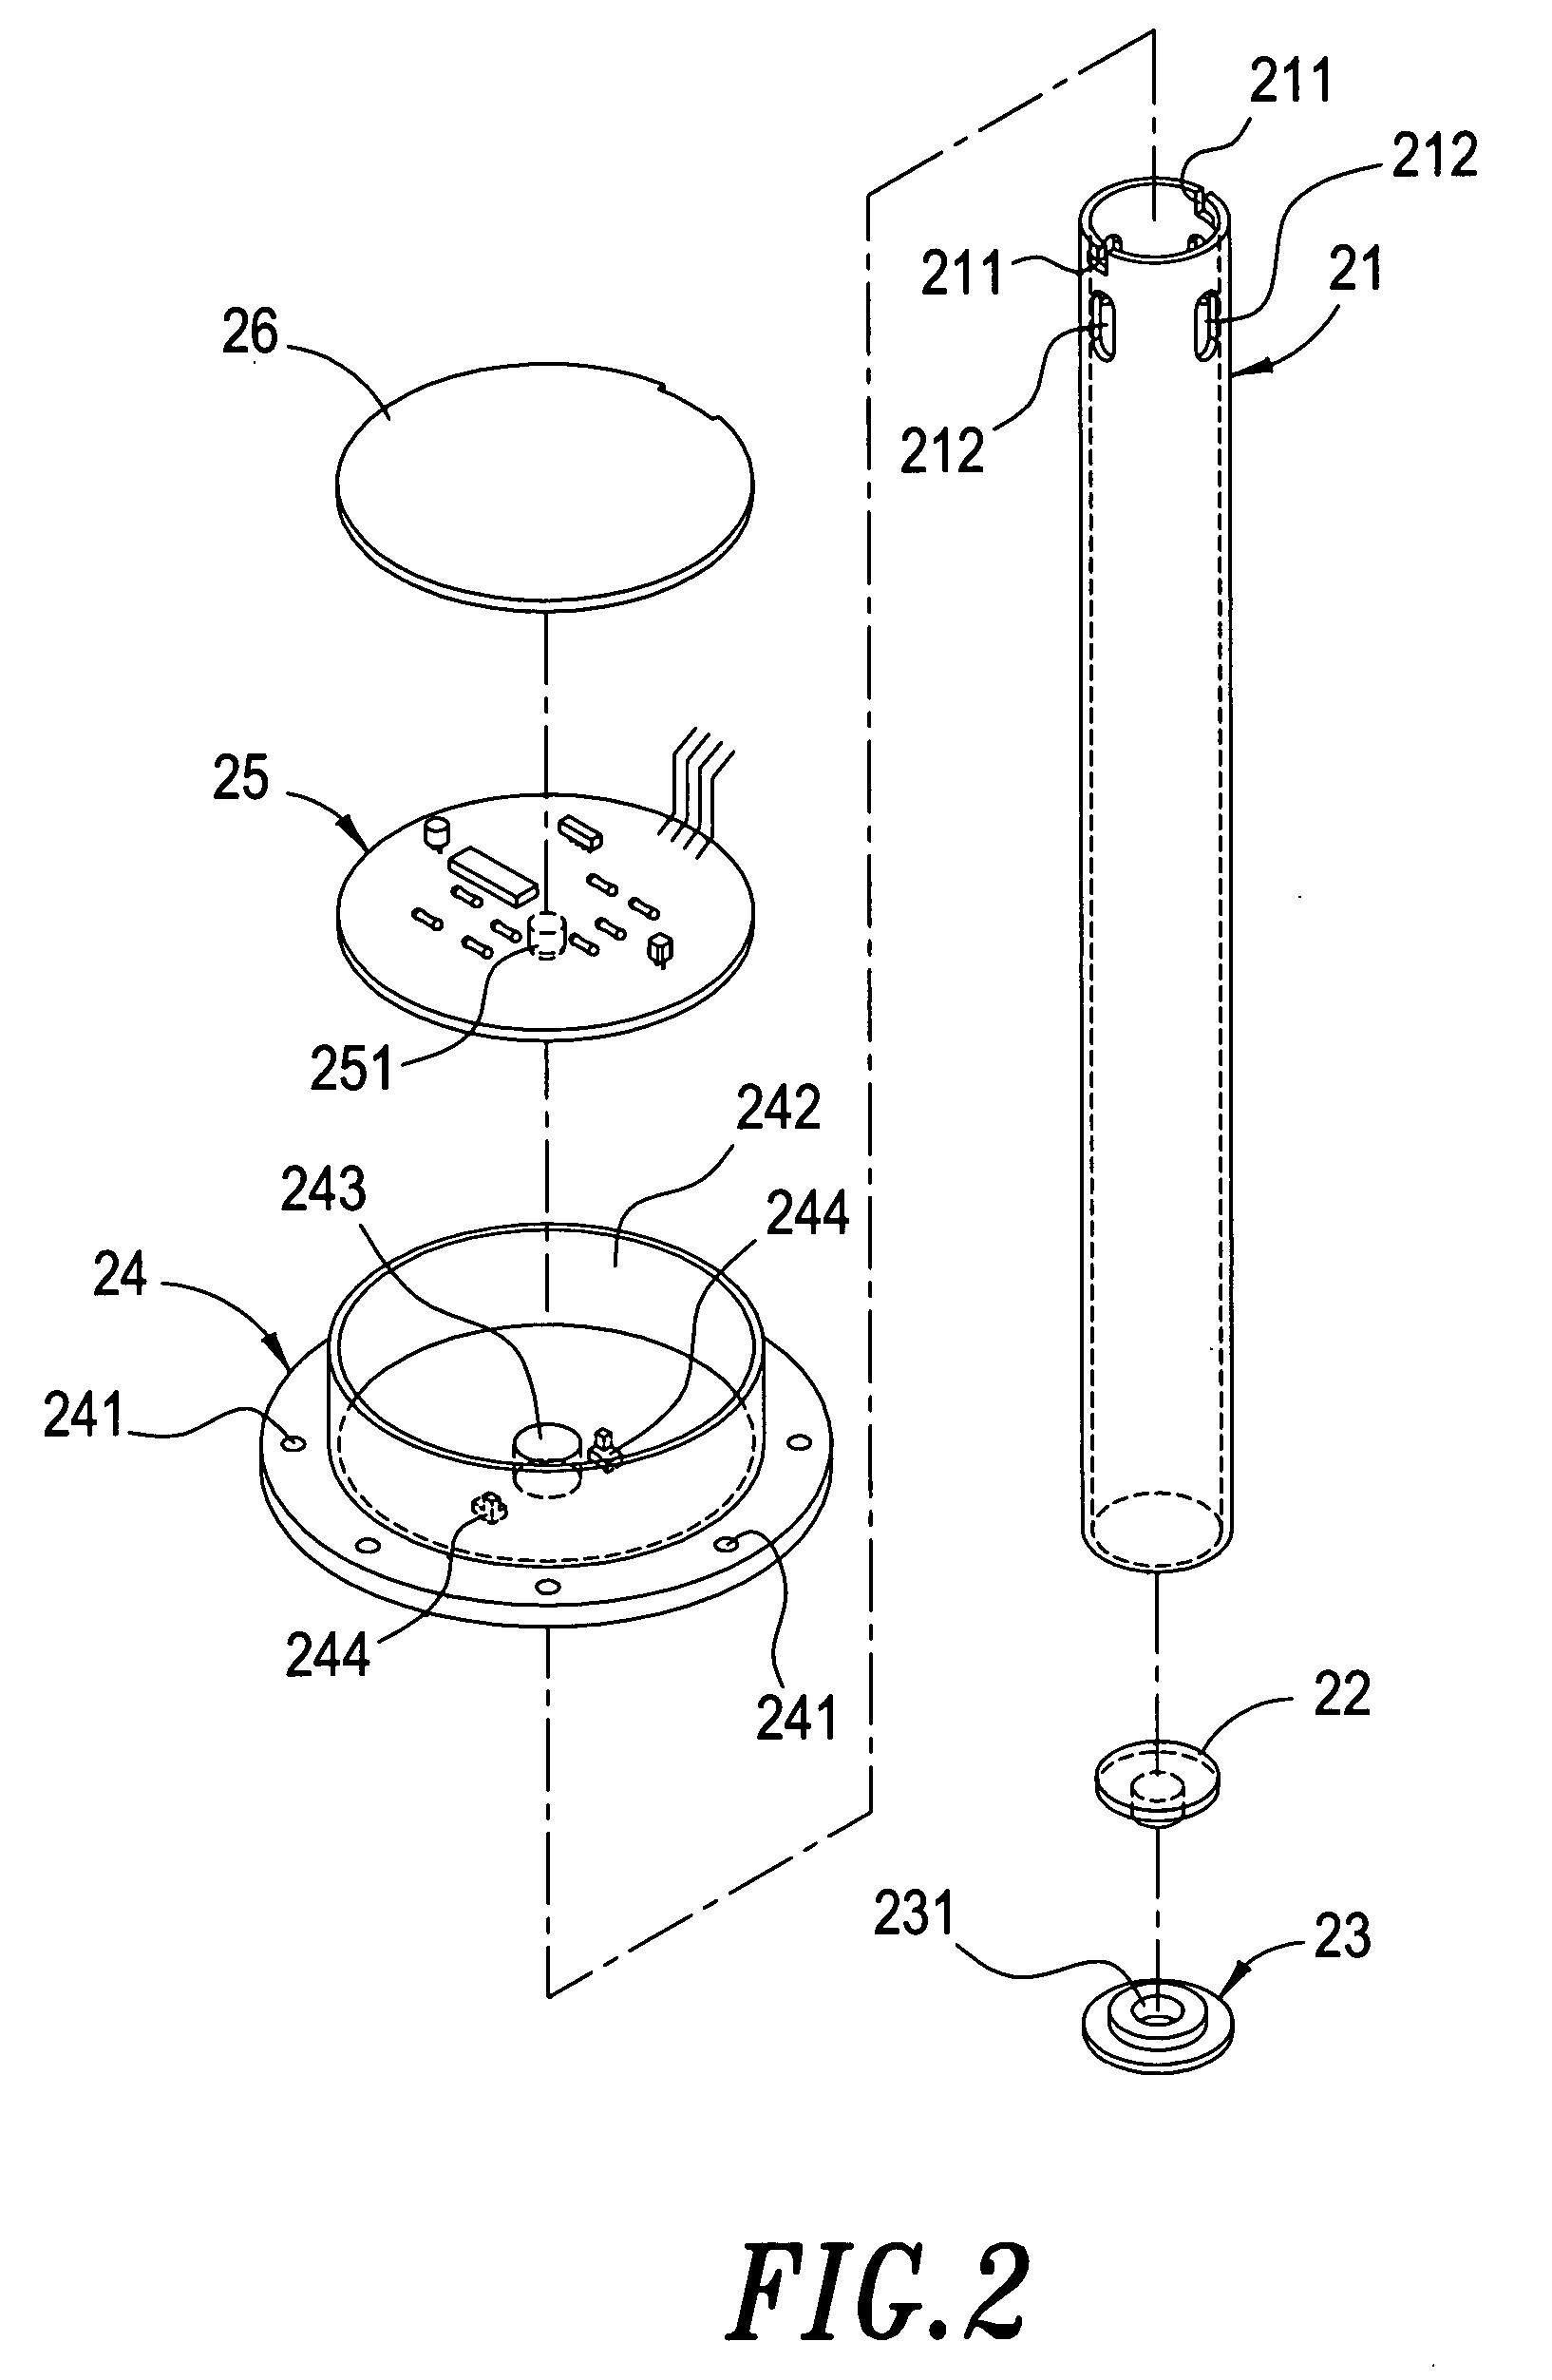 Liquid quantity sensing device